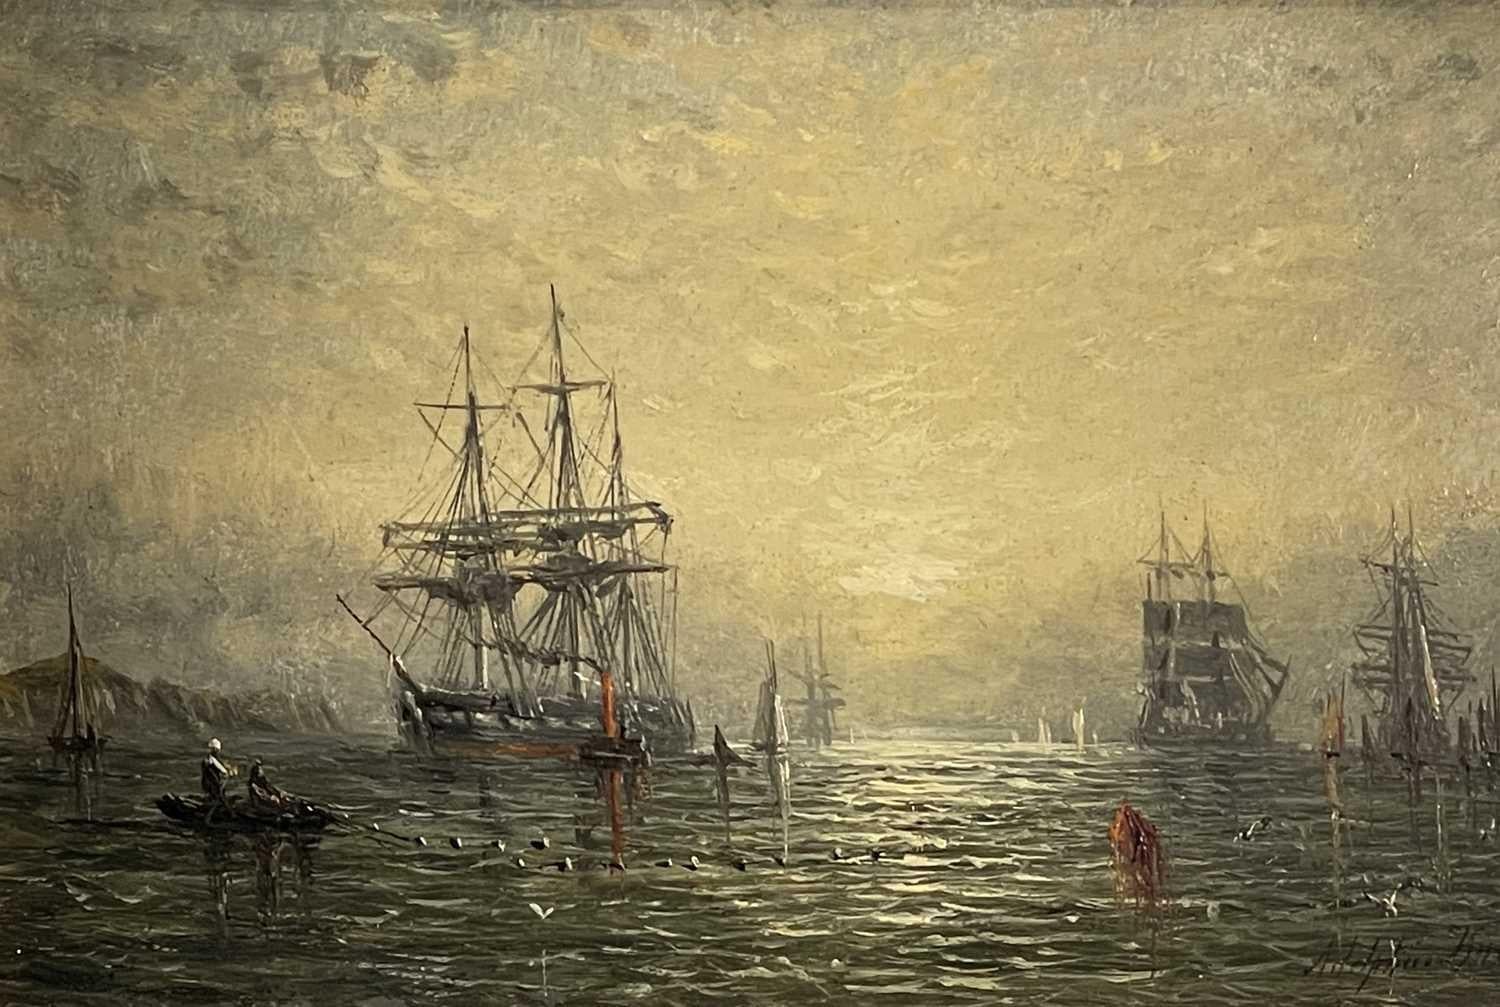 Landscape Painting Adolphus Knell - « Livraison, coucher de soleil ».